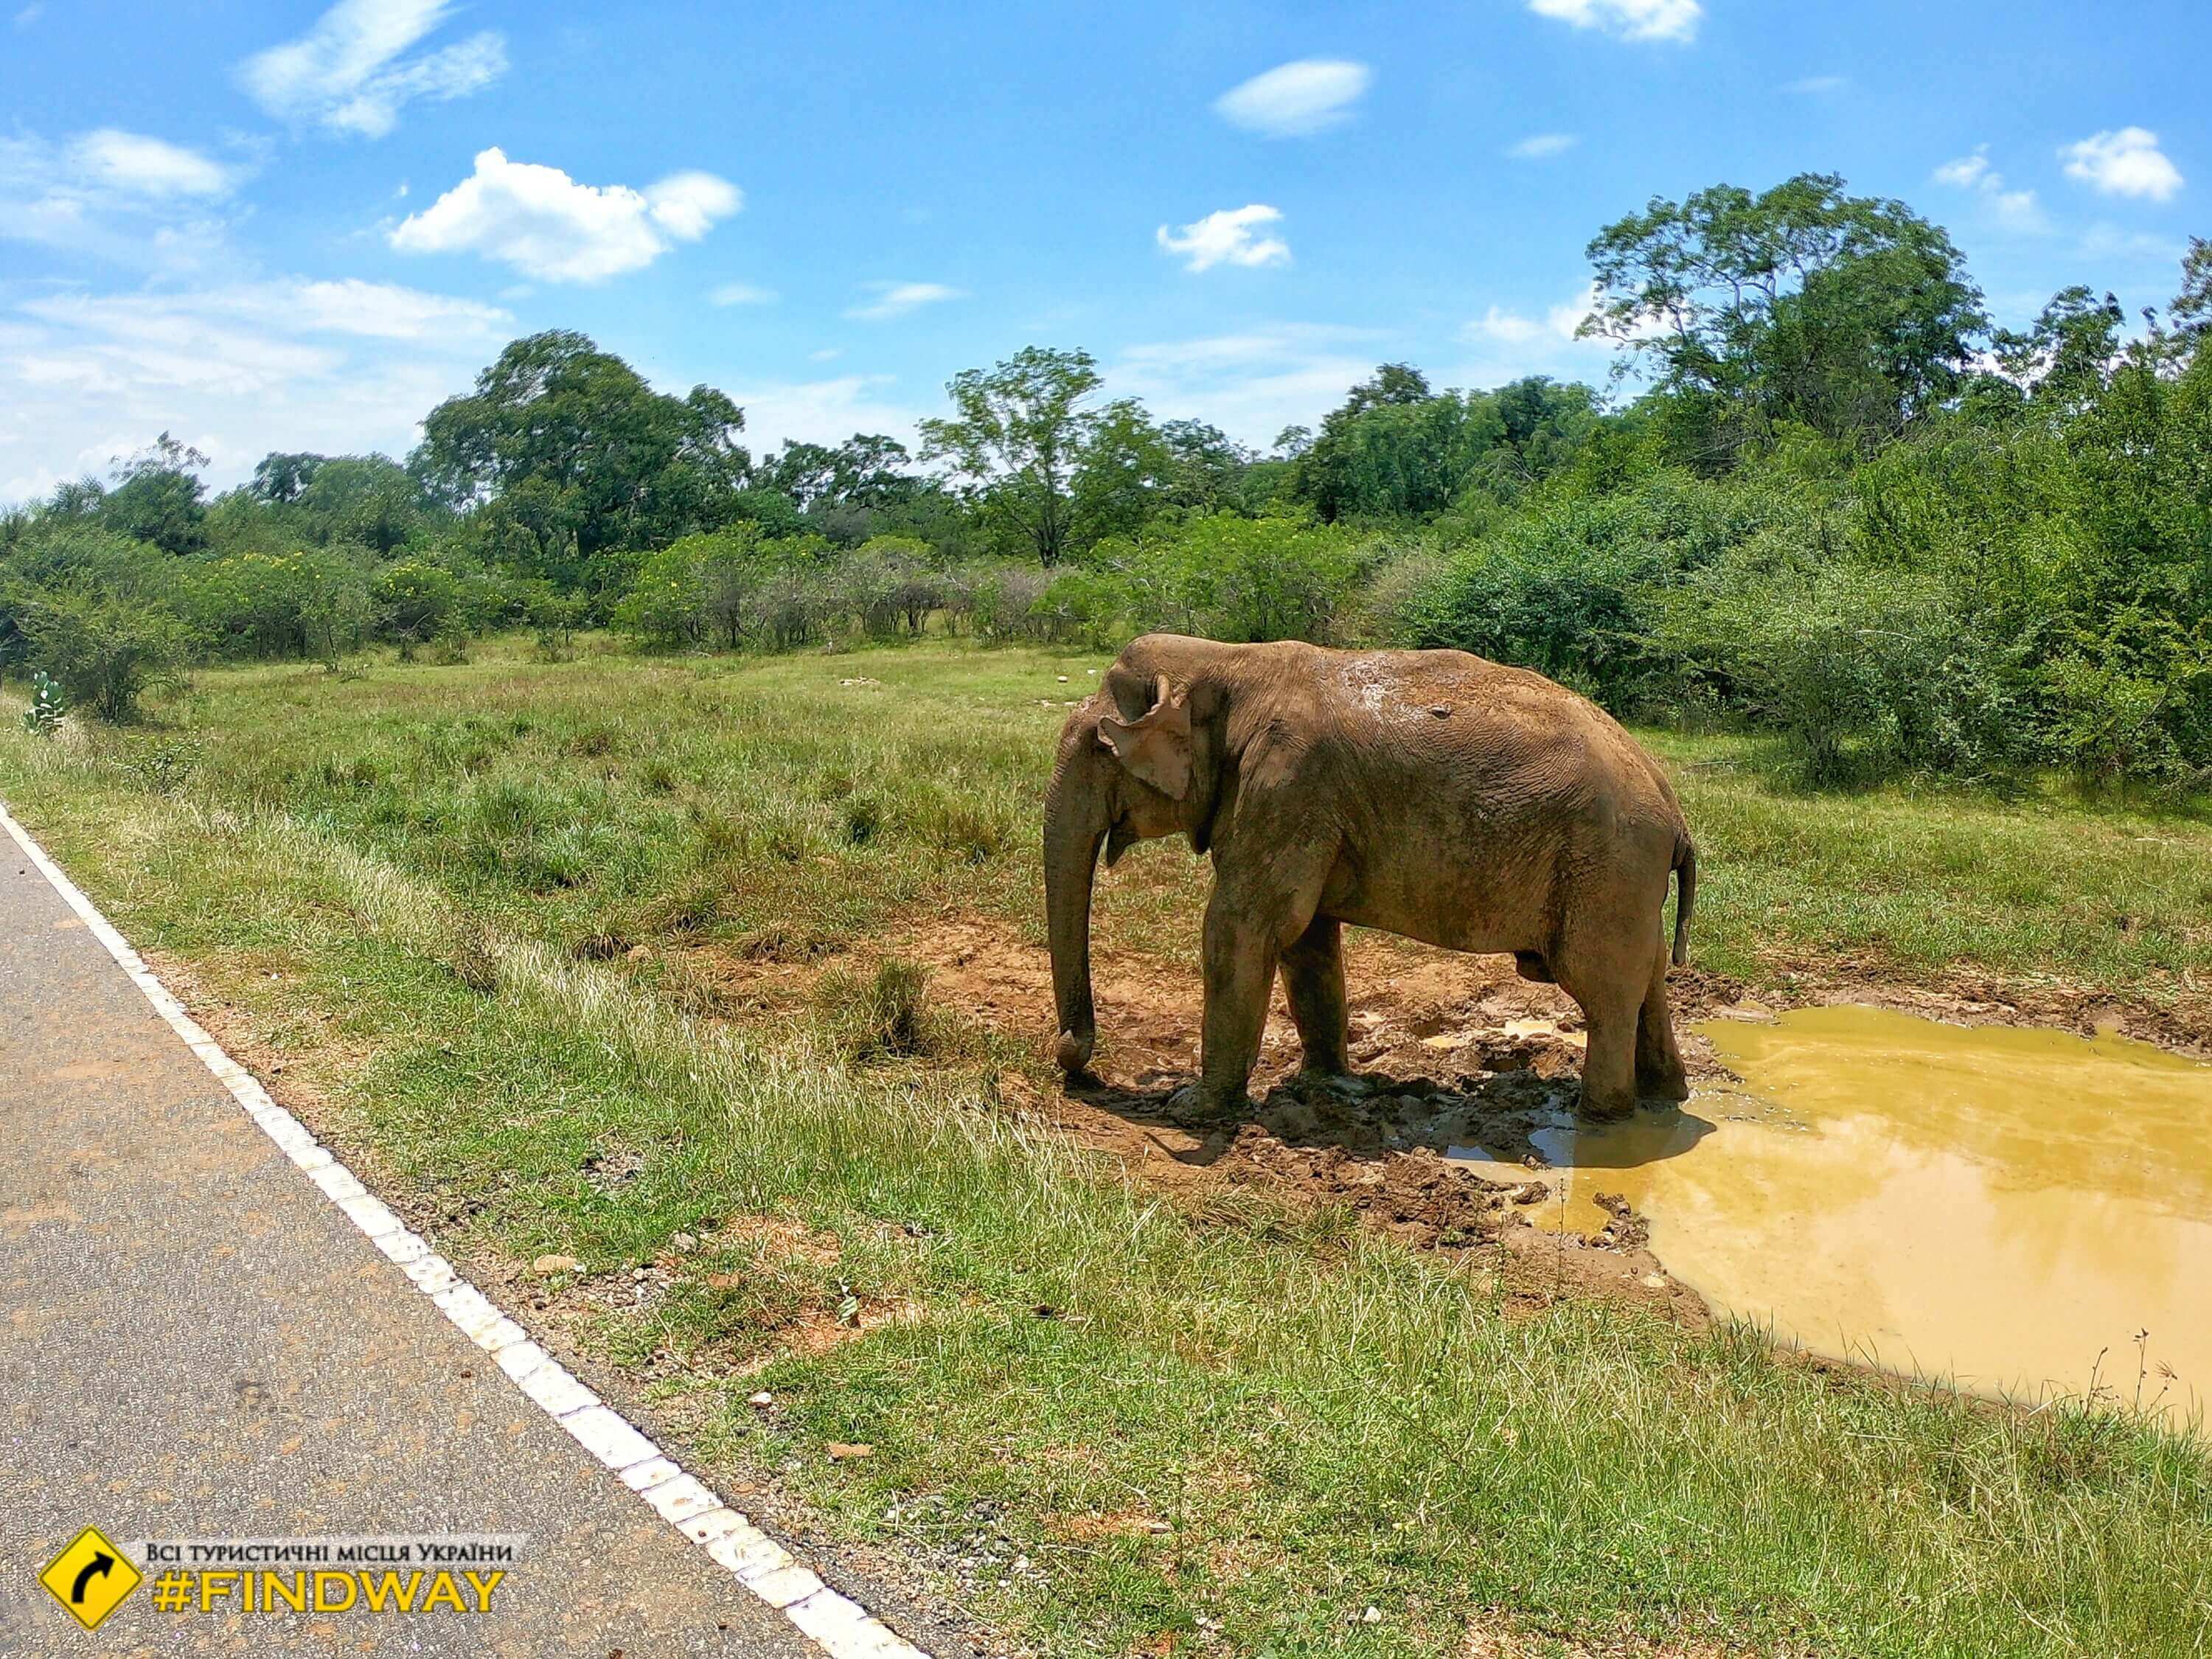 шри ланка слон на дороге национальный парк файндвей блог